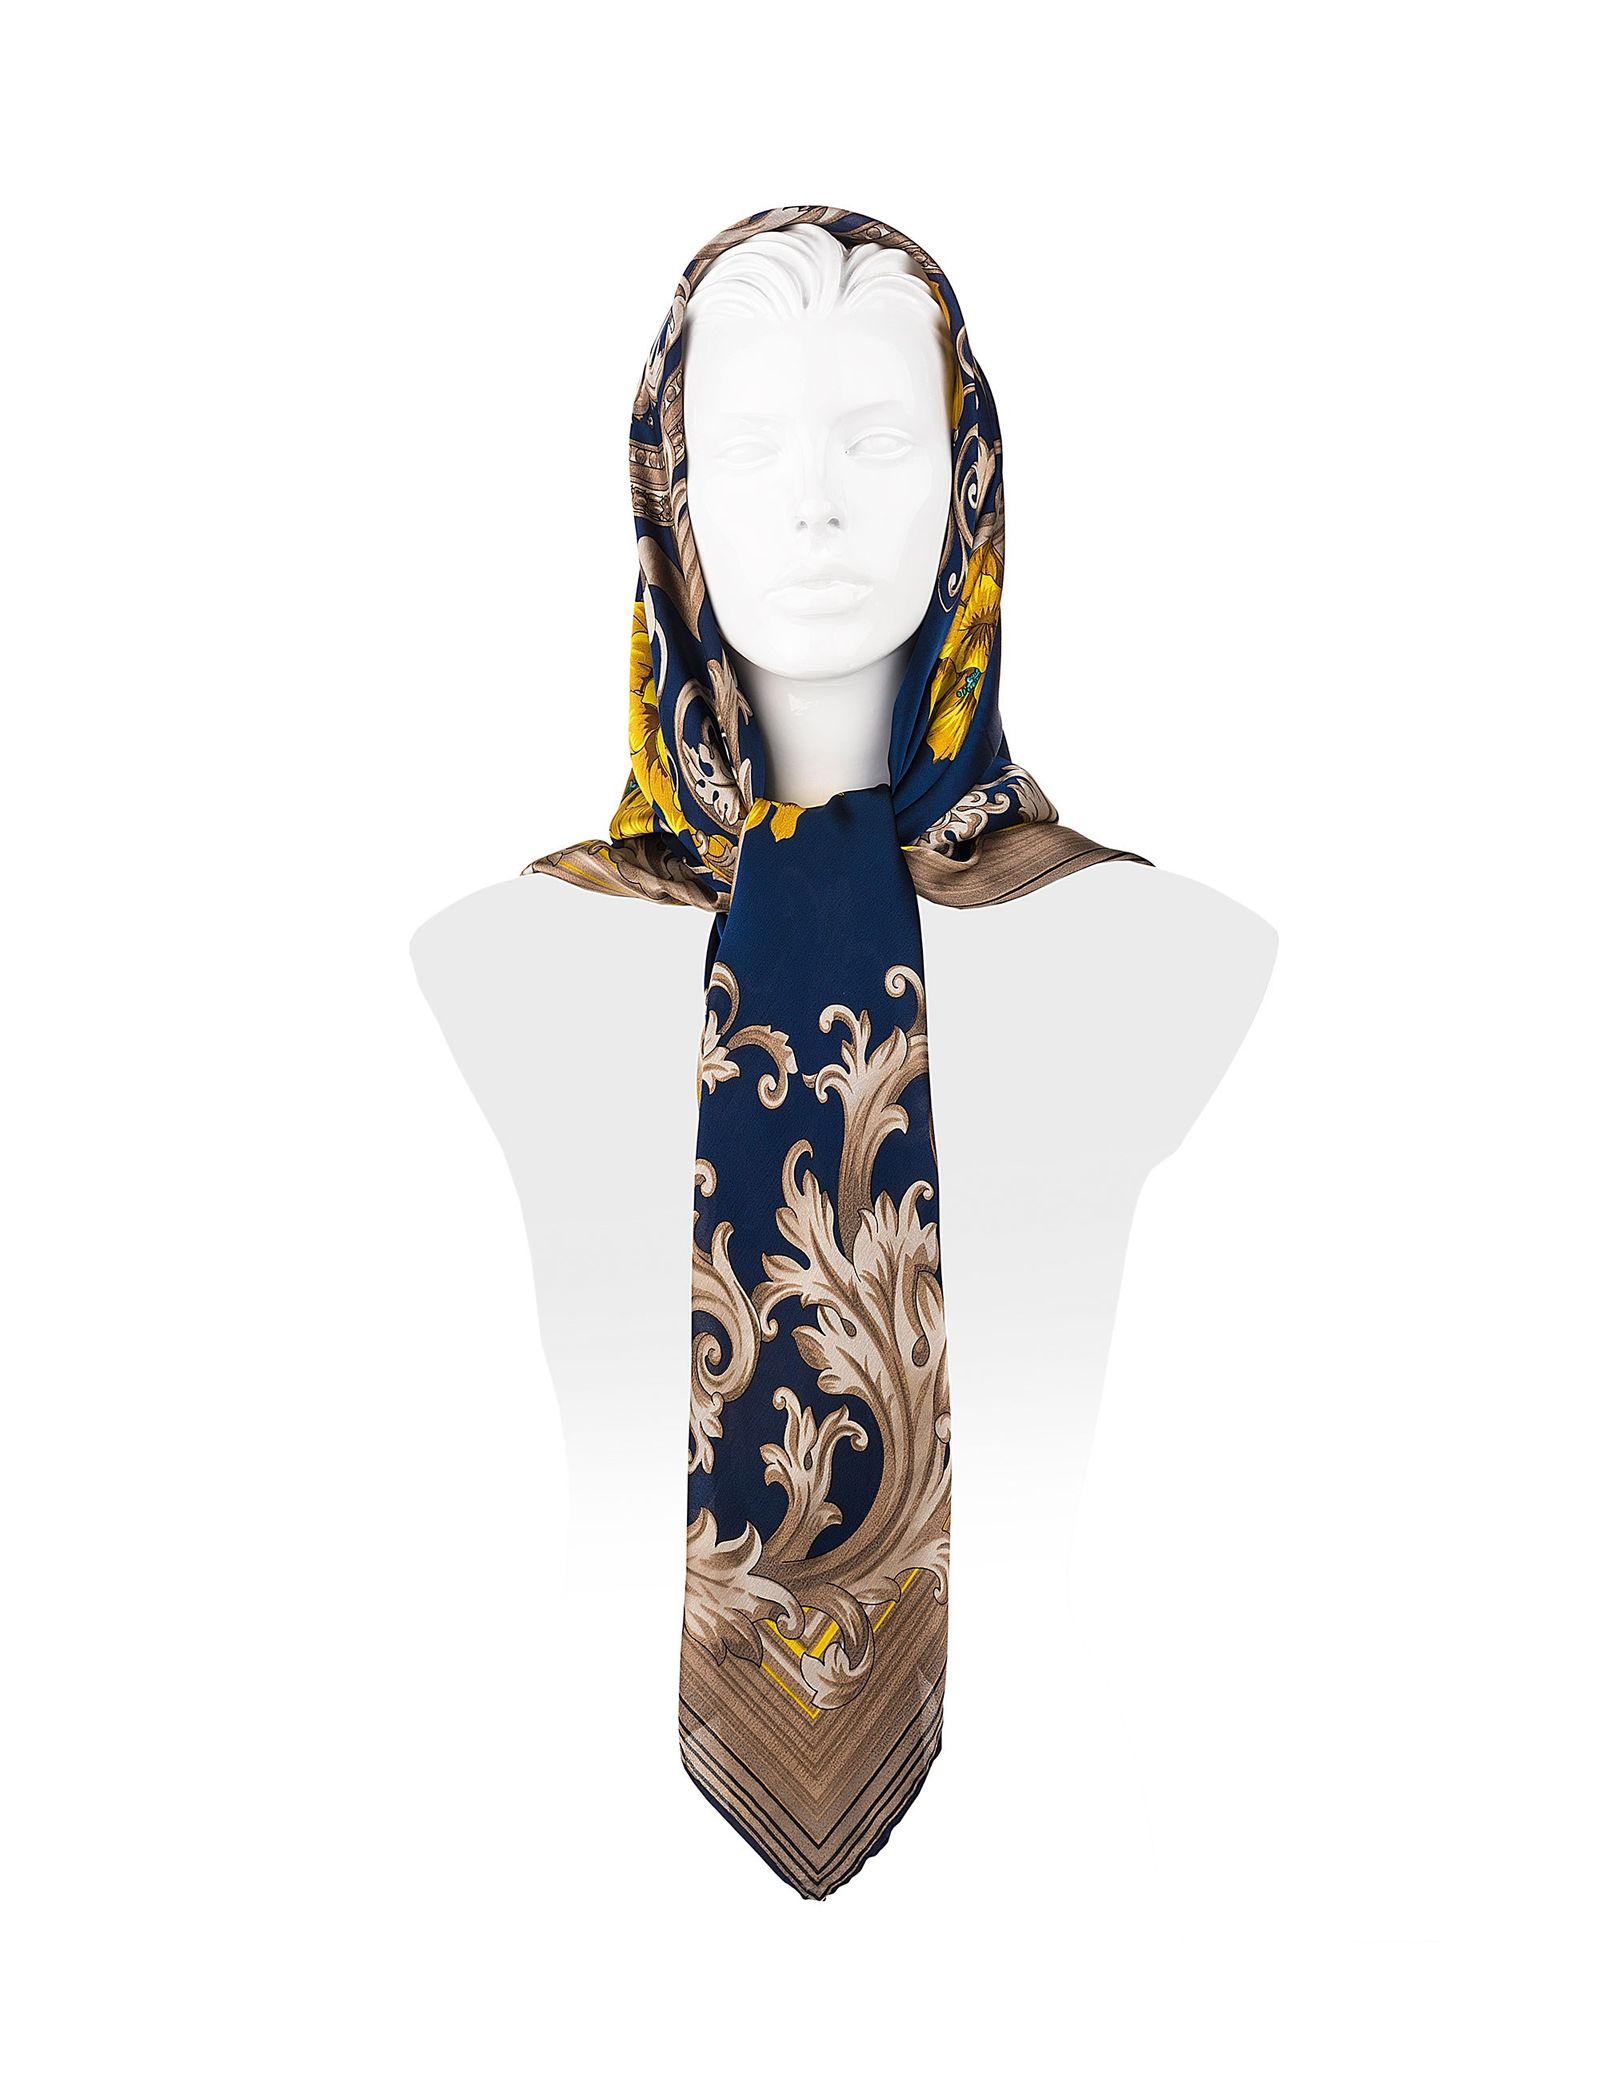 روسری ابریشمی زنانه - رزتی - سرمه اي و قهوه اي - 4